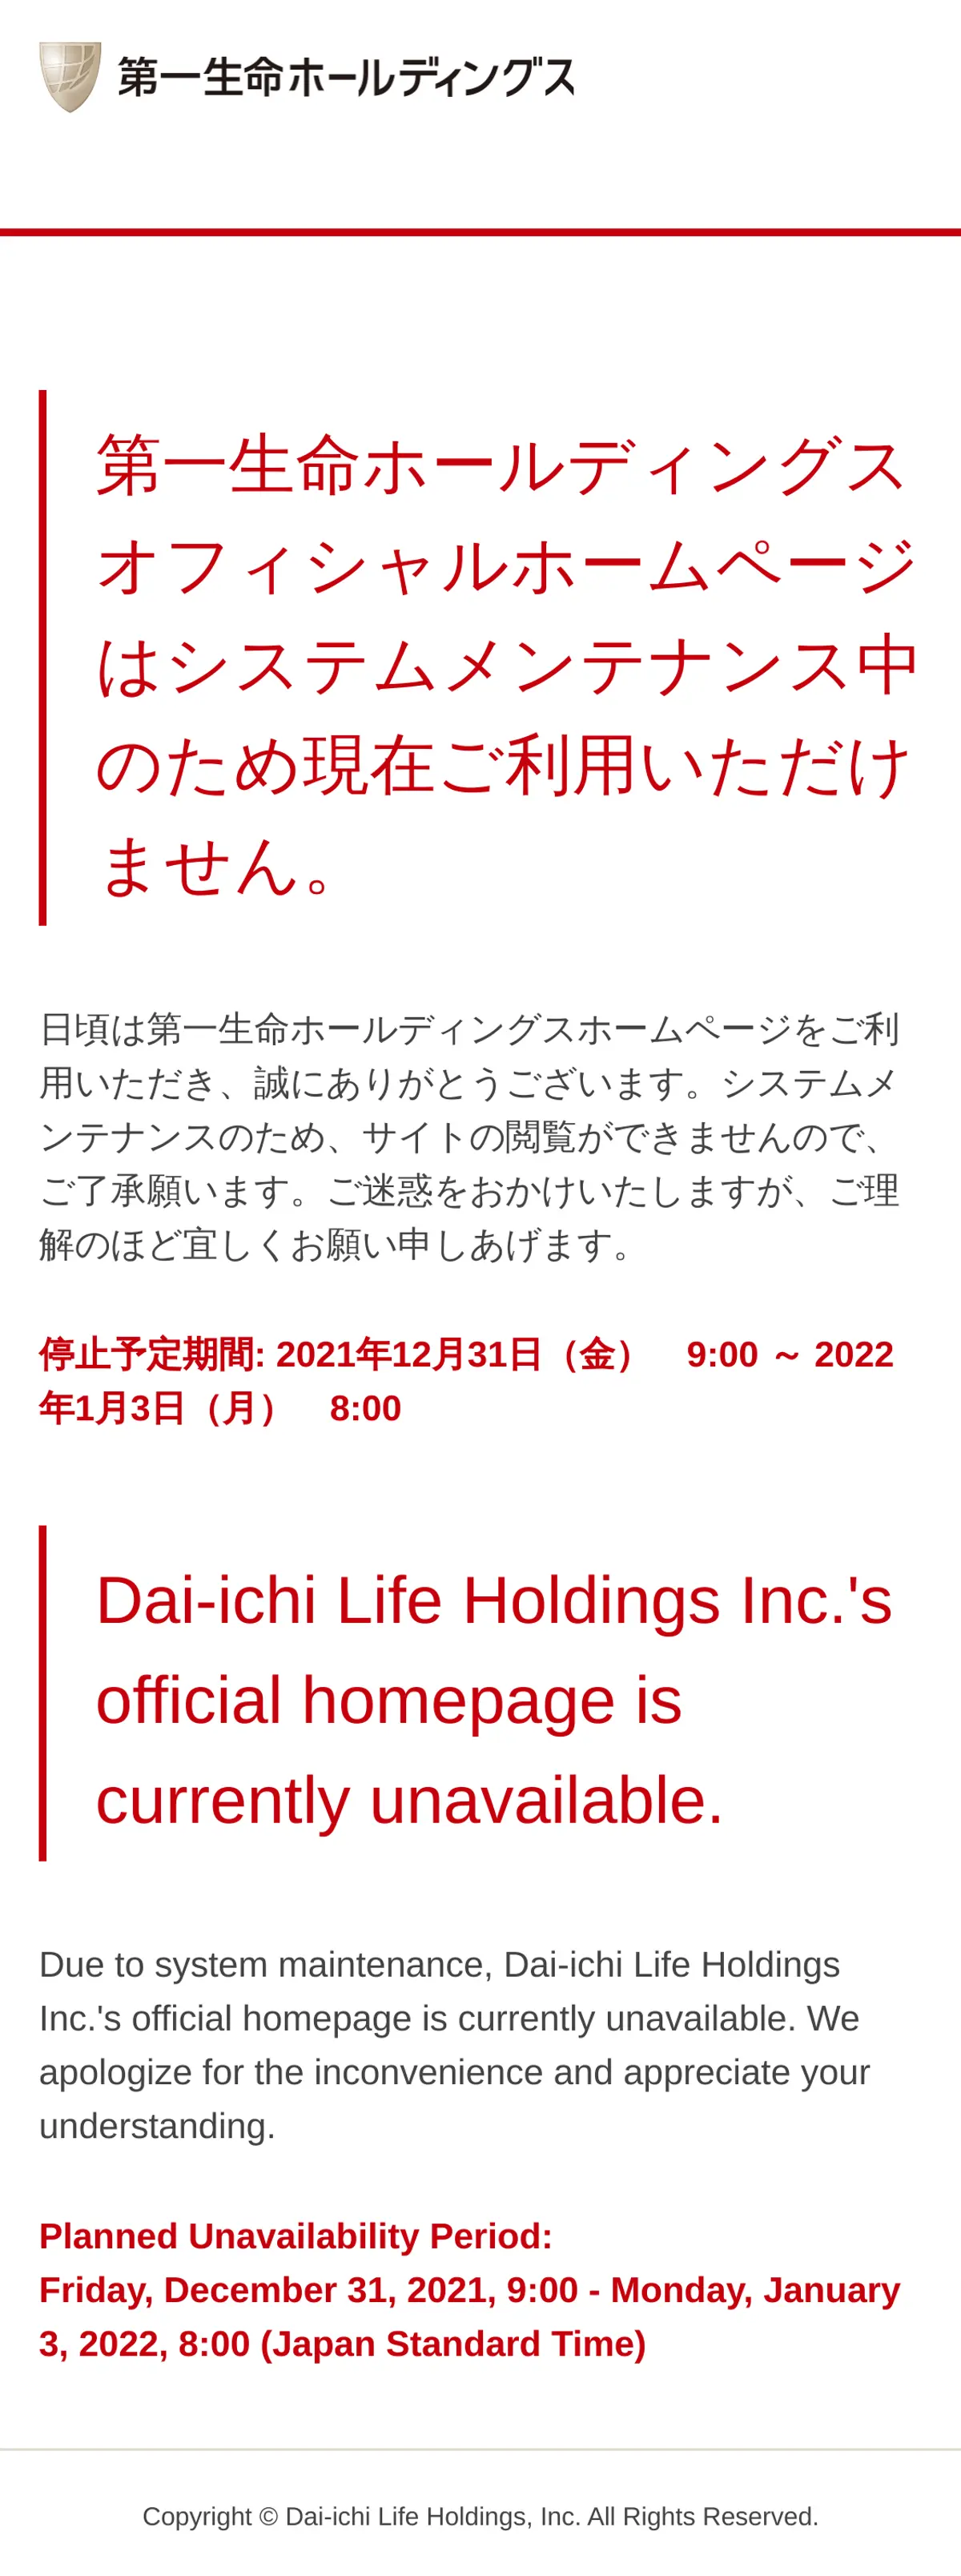 キャプチャ画面 会社名:第一生命ホールディングス株式会社プロジェクト名:Dai-ichi Life Innovation Lab 画面名:A デバイス名:SPカテゴリ:金融・保険タグ:A,SP